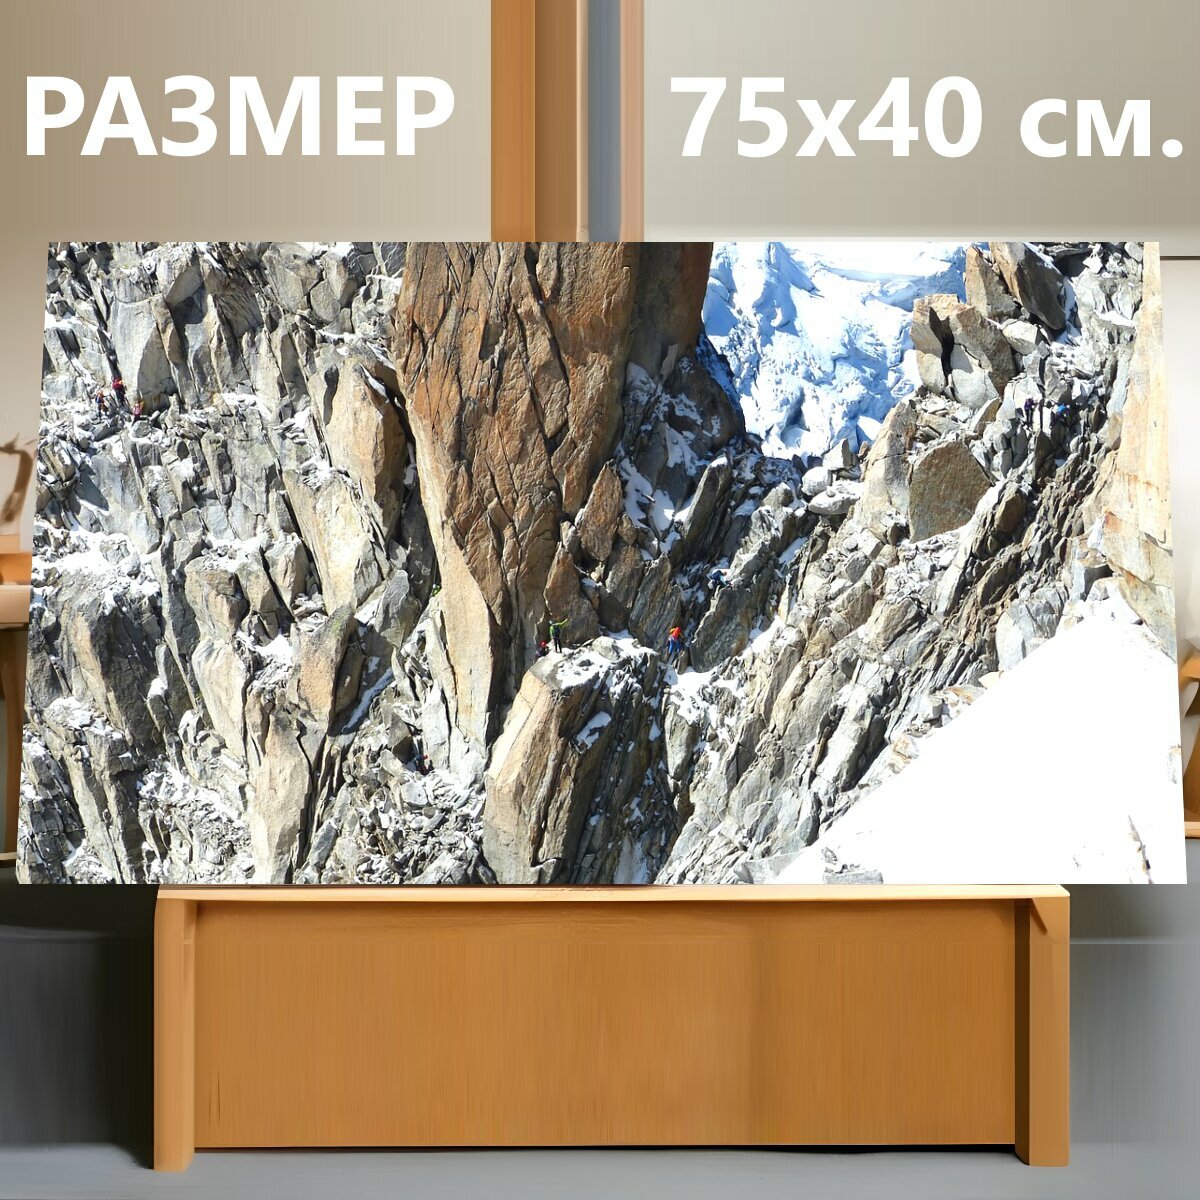 Картина на холсте "Альпинисты, стена, альпинизм" на подрамнике 75х40 см. для интерьера